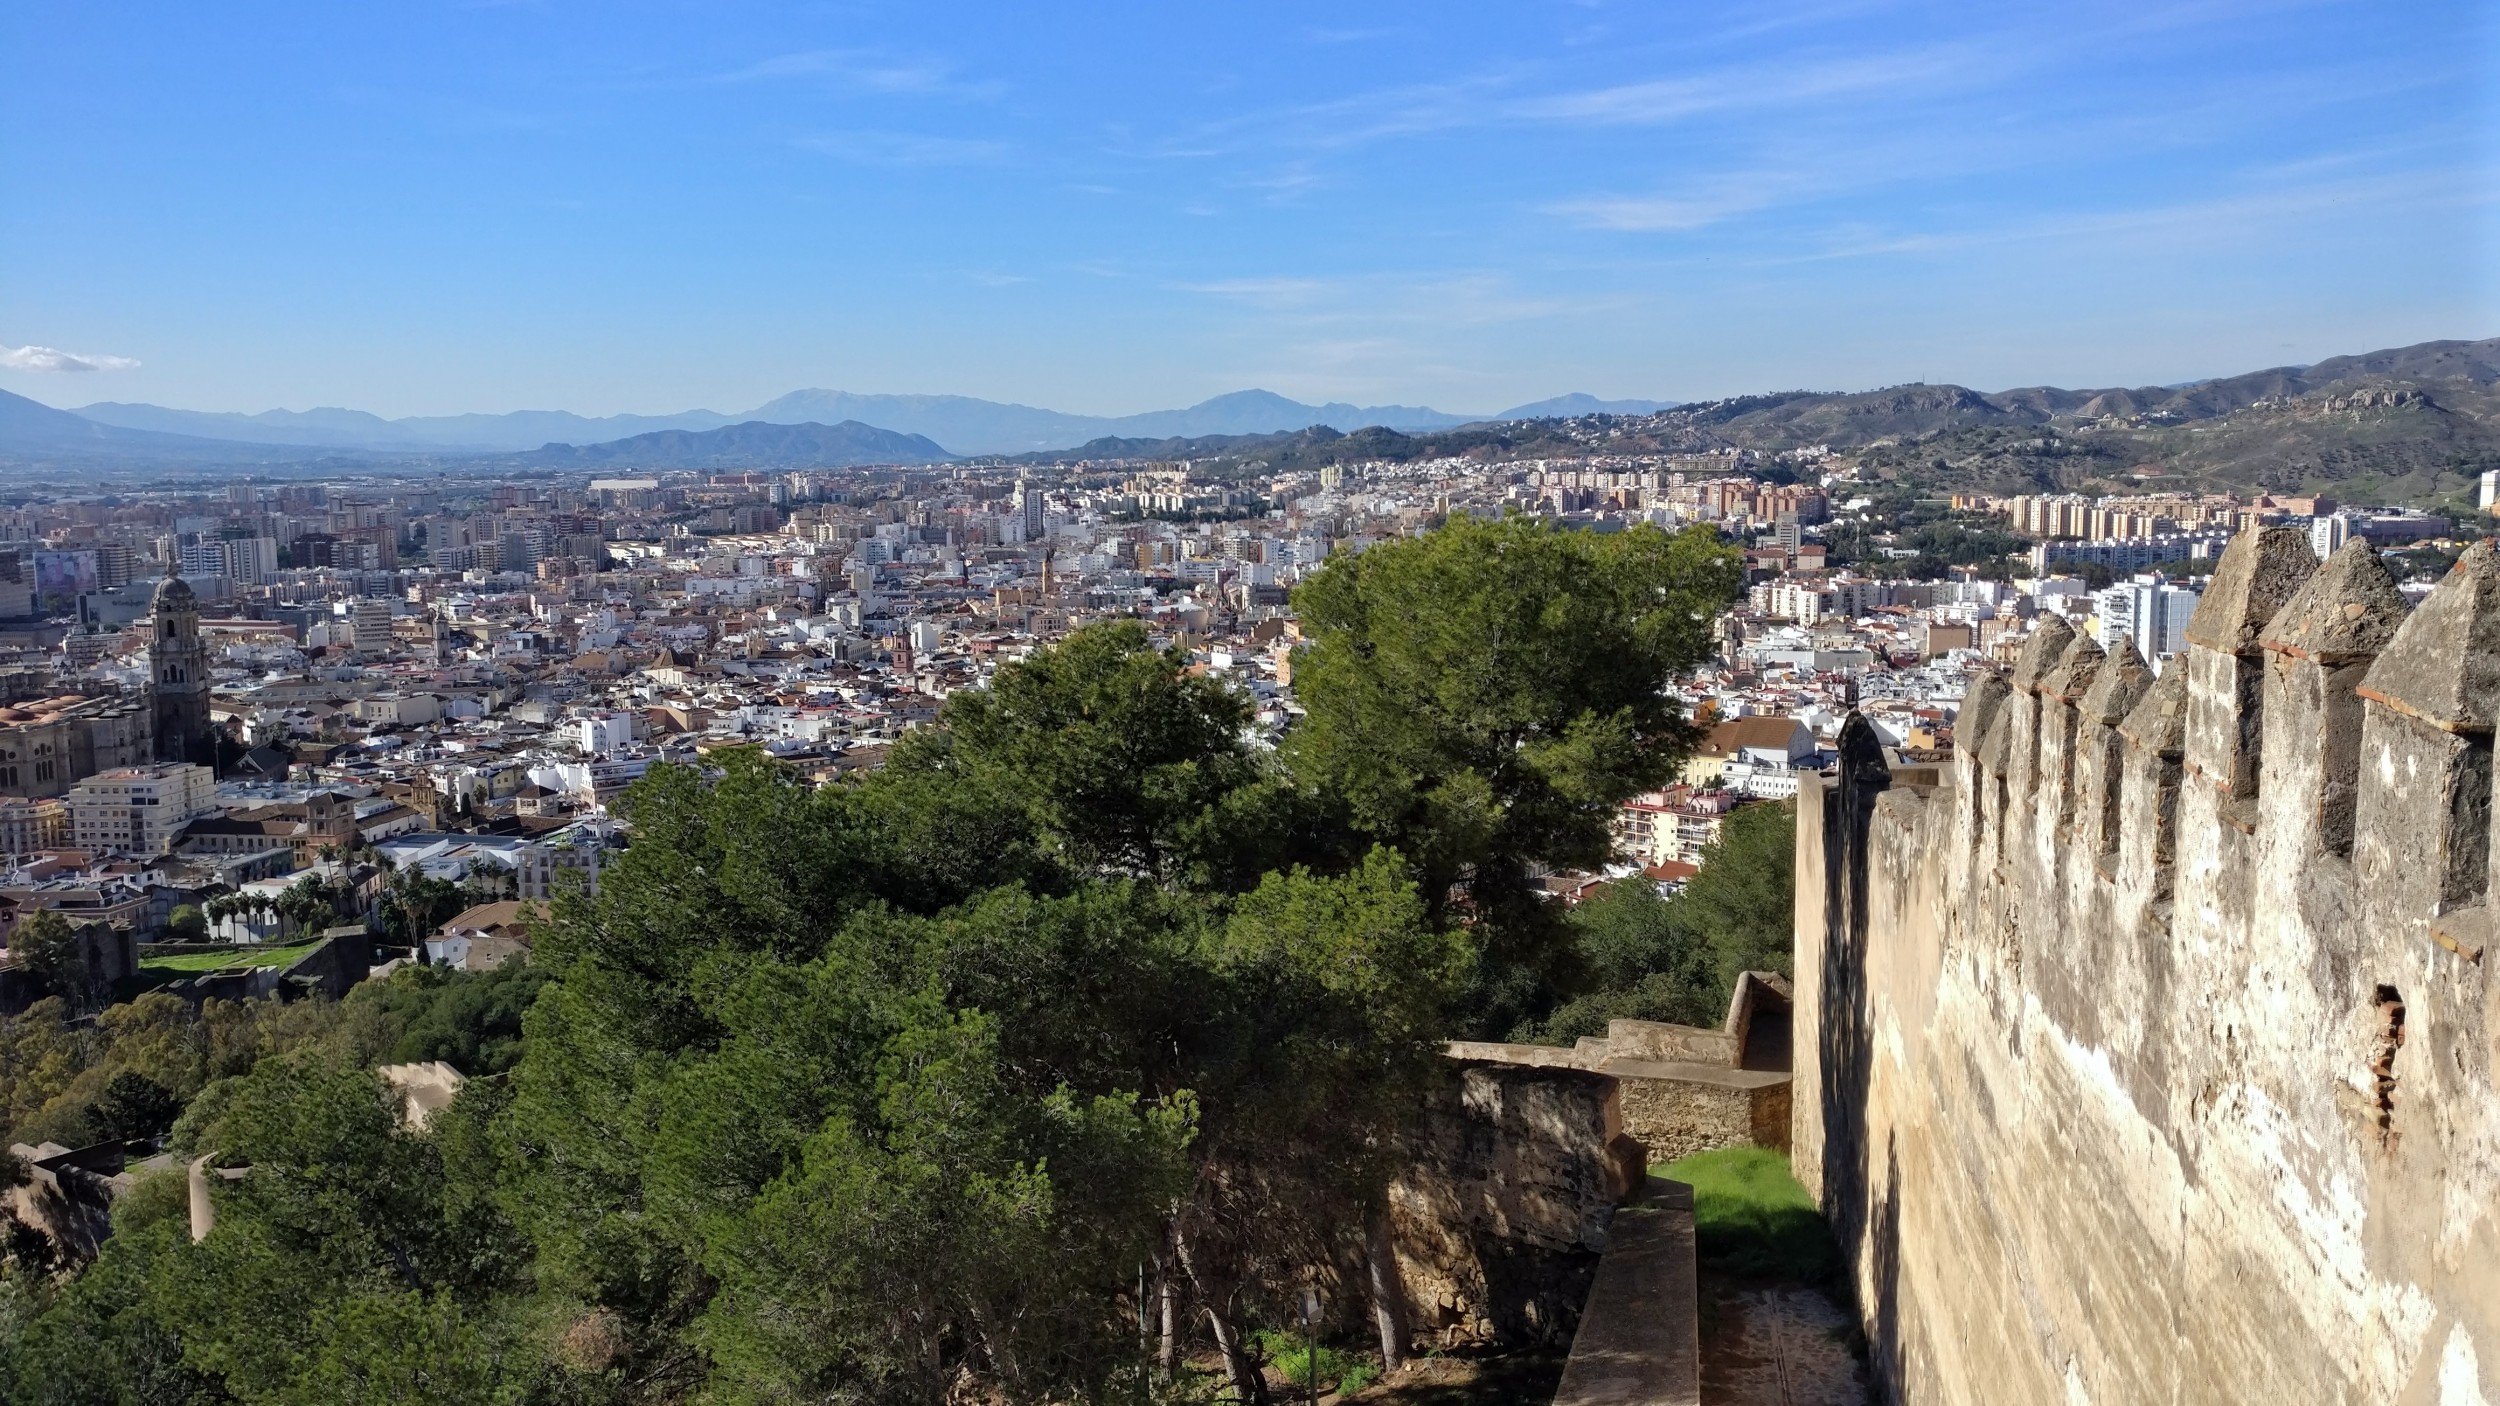 Castillo de Gibralfaro : Malaga | Visions of Travel